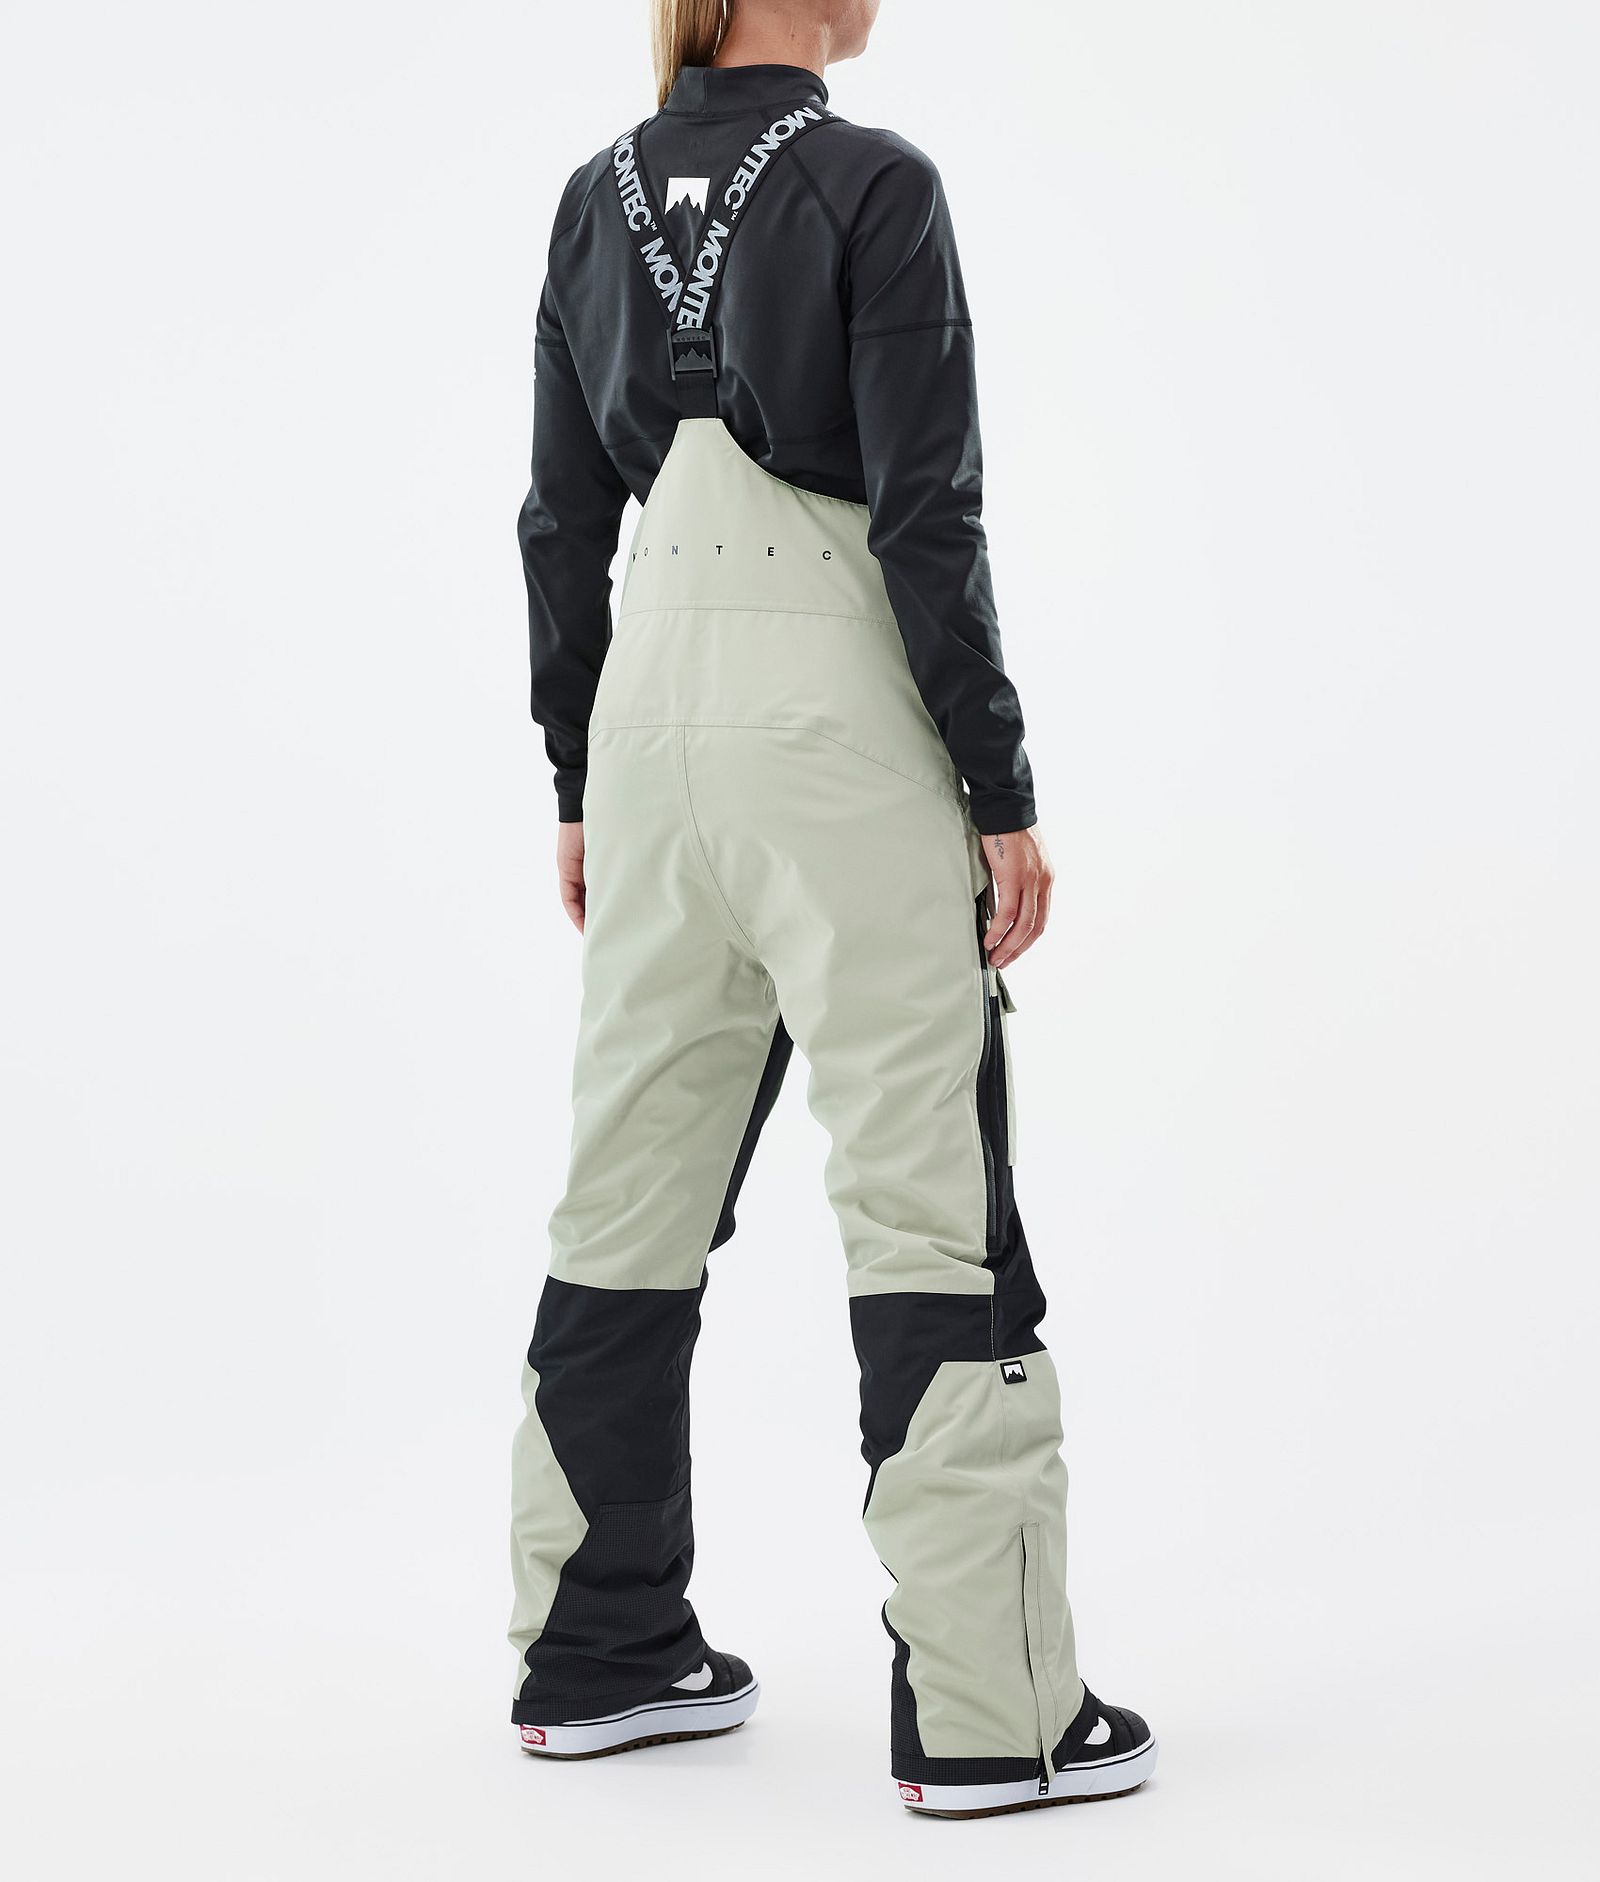 Fawk W Spodnie Snowboardowe Kobiety Soft Green/Black Renewed, Zdjęcie 4 z 7